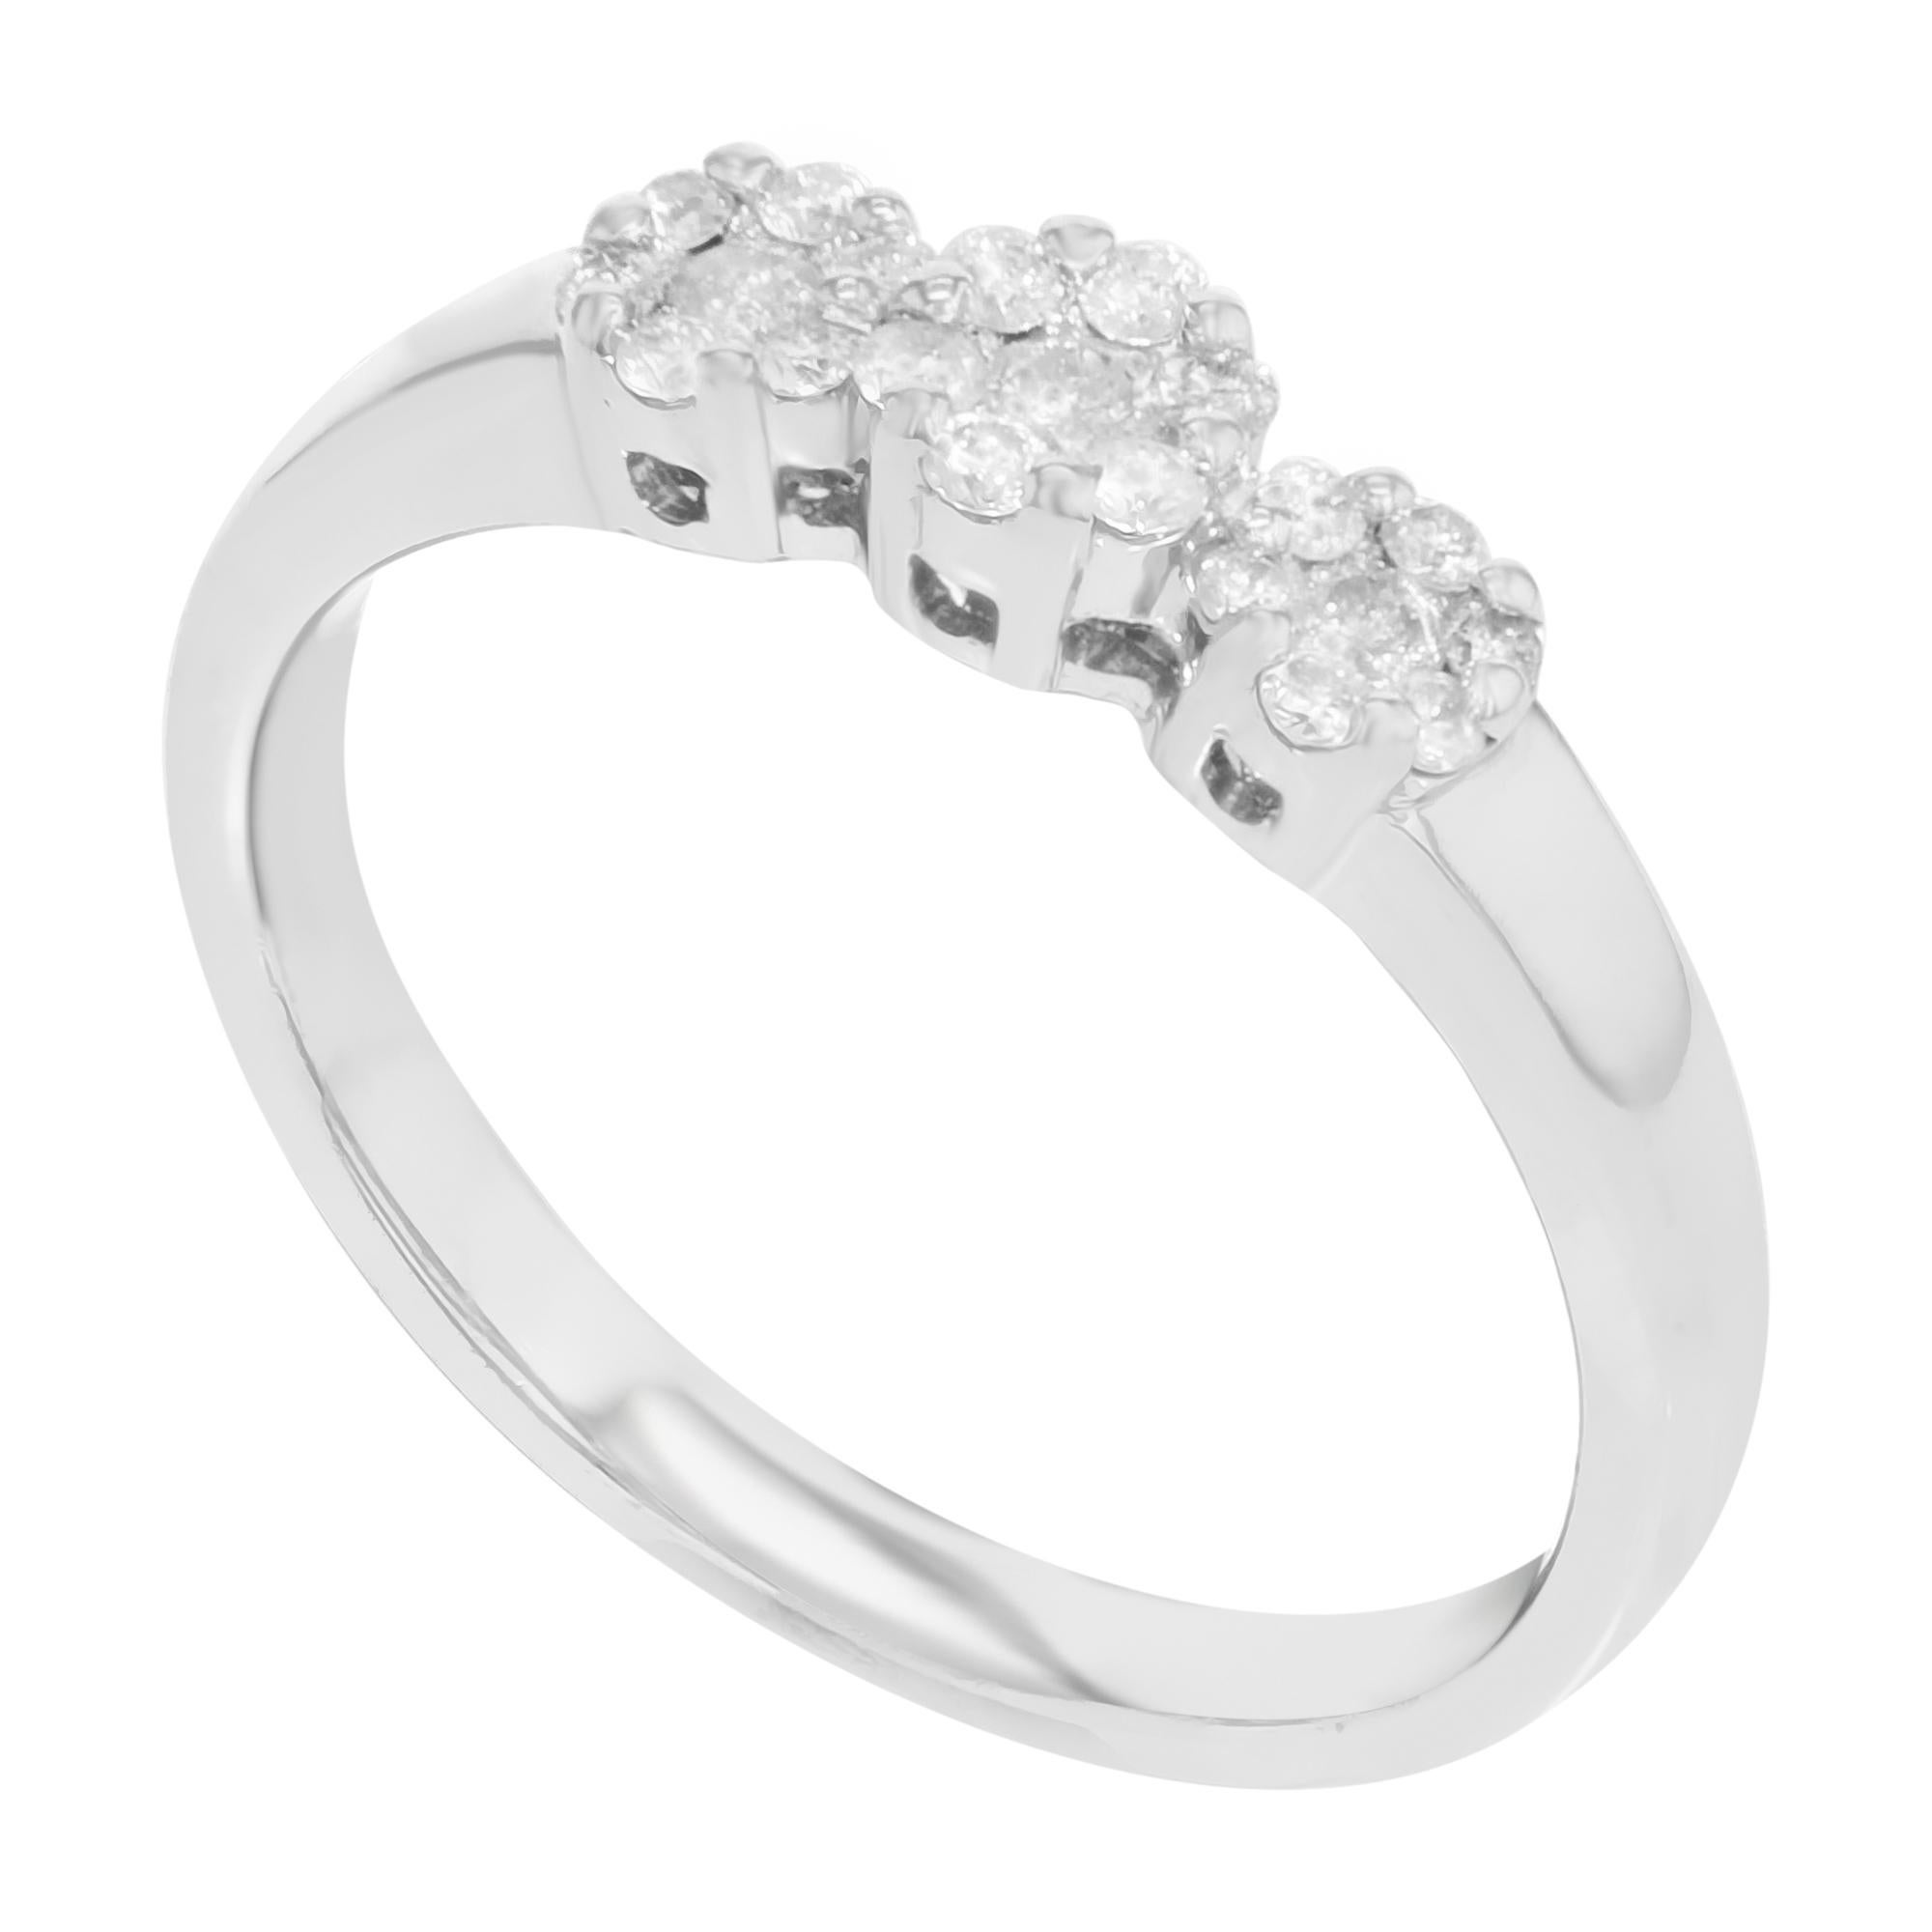 Modern Rachel Koen Diamond Wedding Band 14k White Gold 0.29 Cttw For Sale